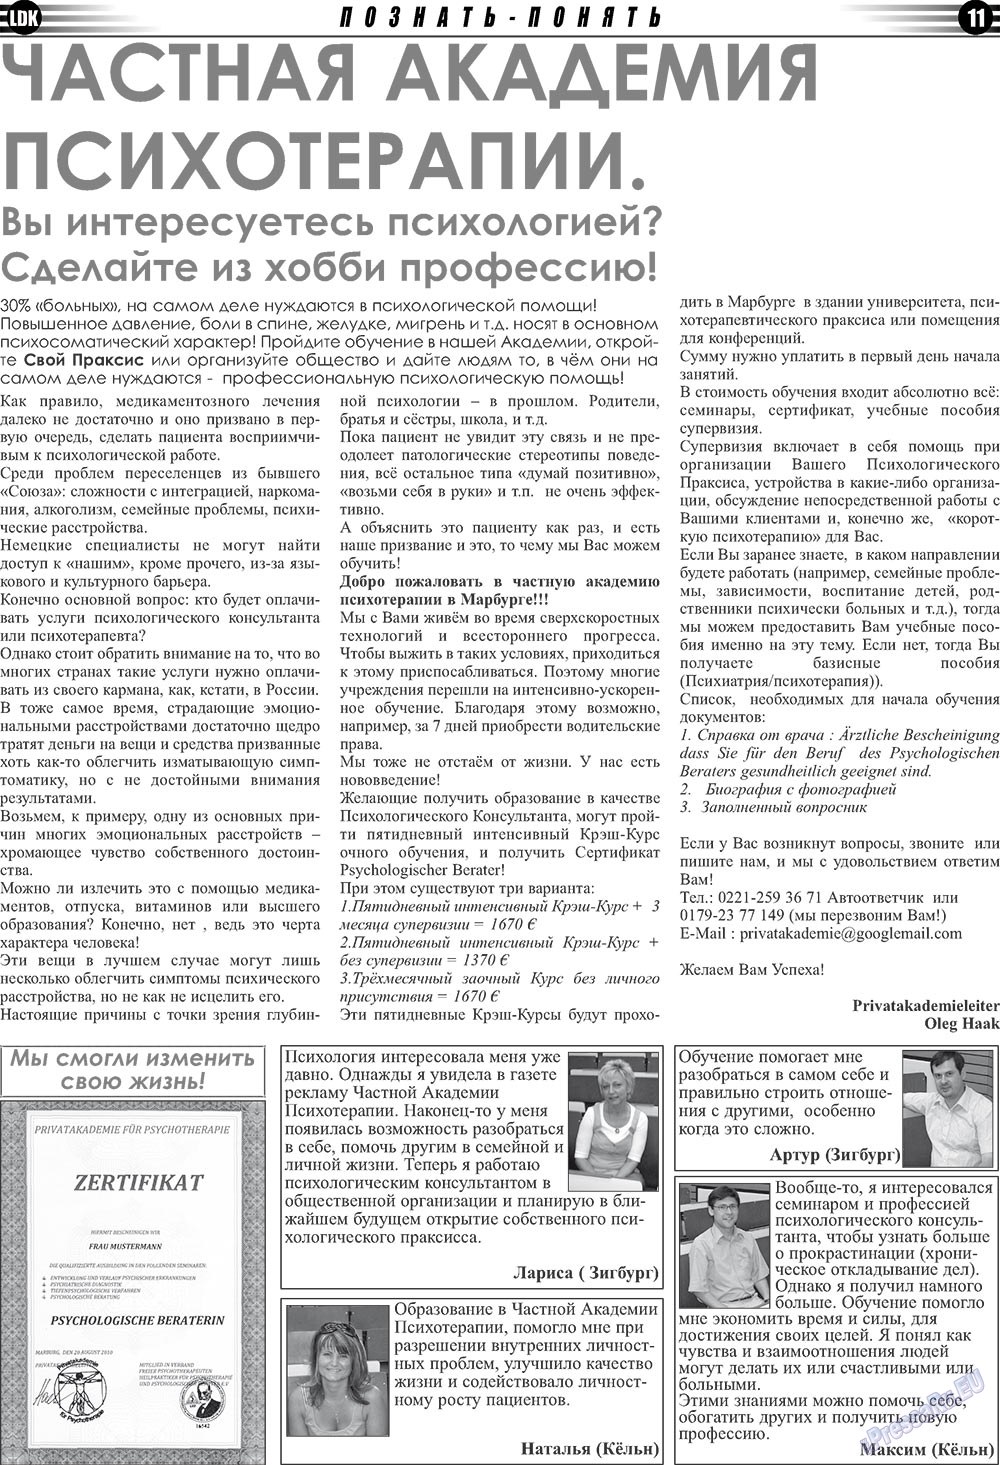 LDK по-русски (газета). 2010 год, номер 10, стр. 11